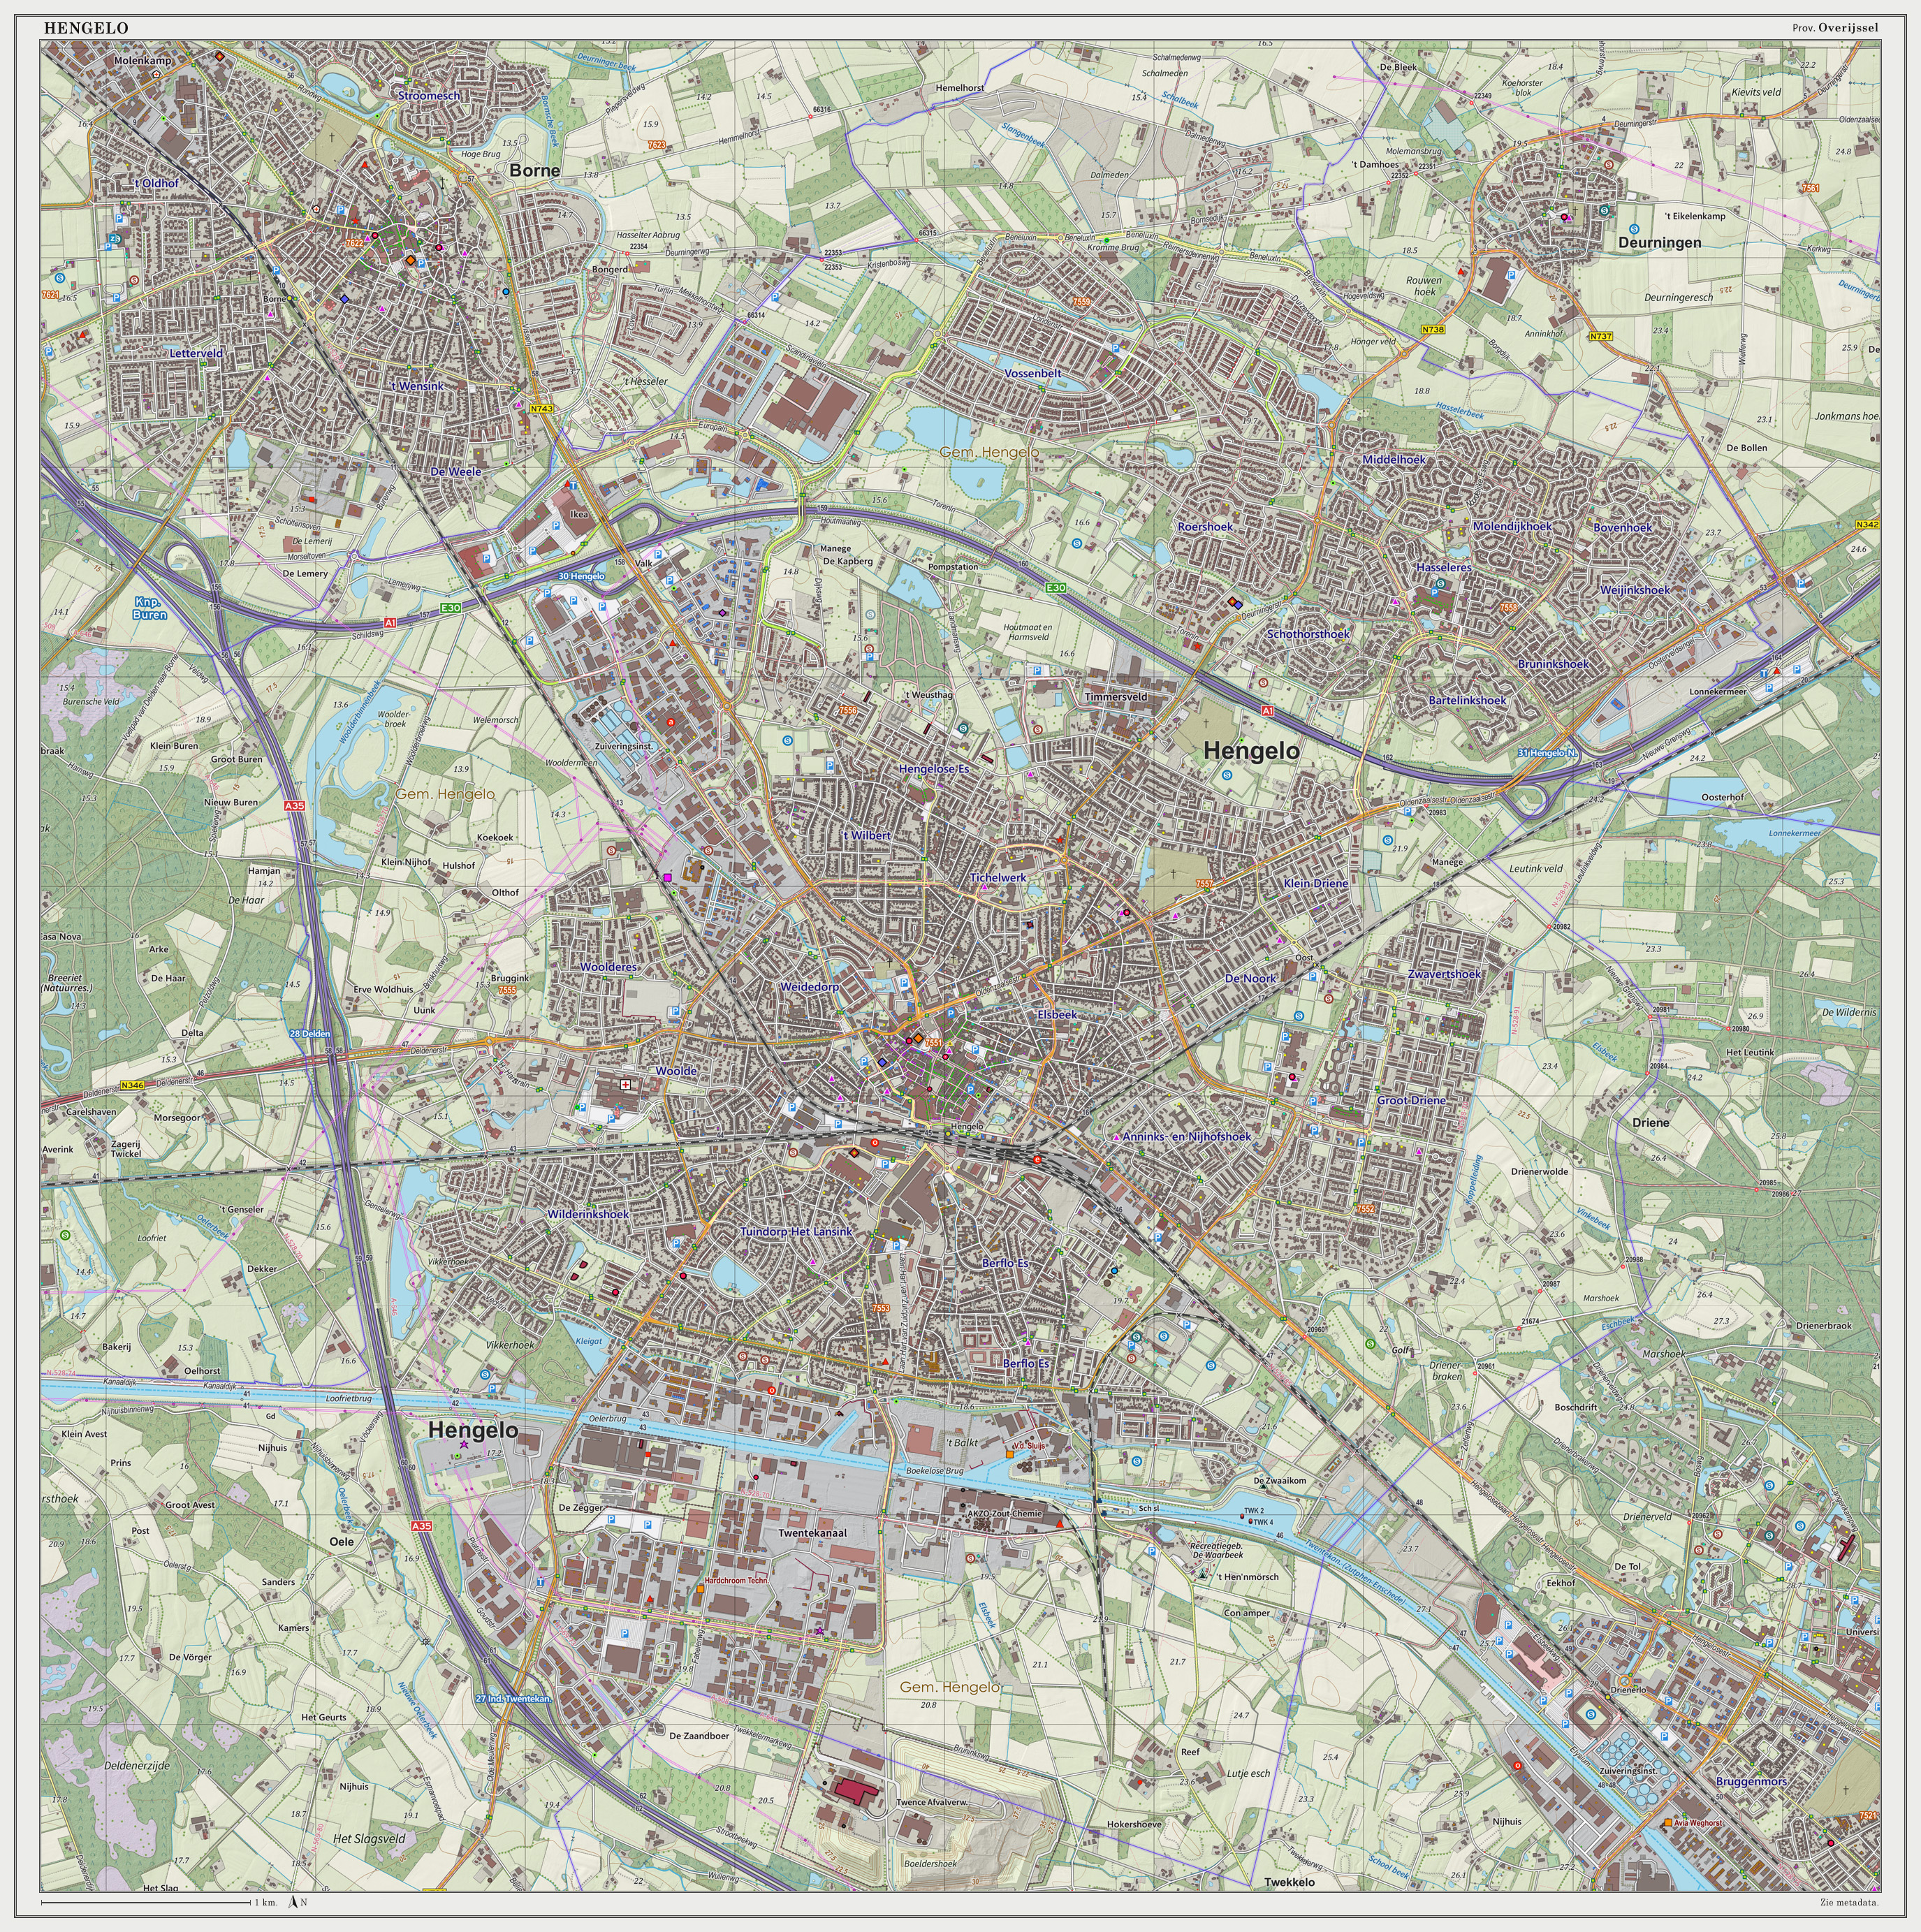 Dutch Topographic map of Hengelo (city), June 2014